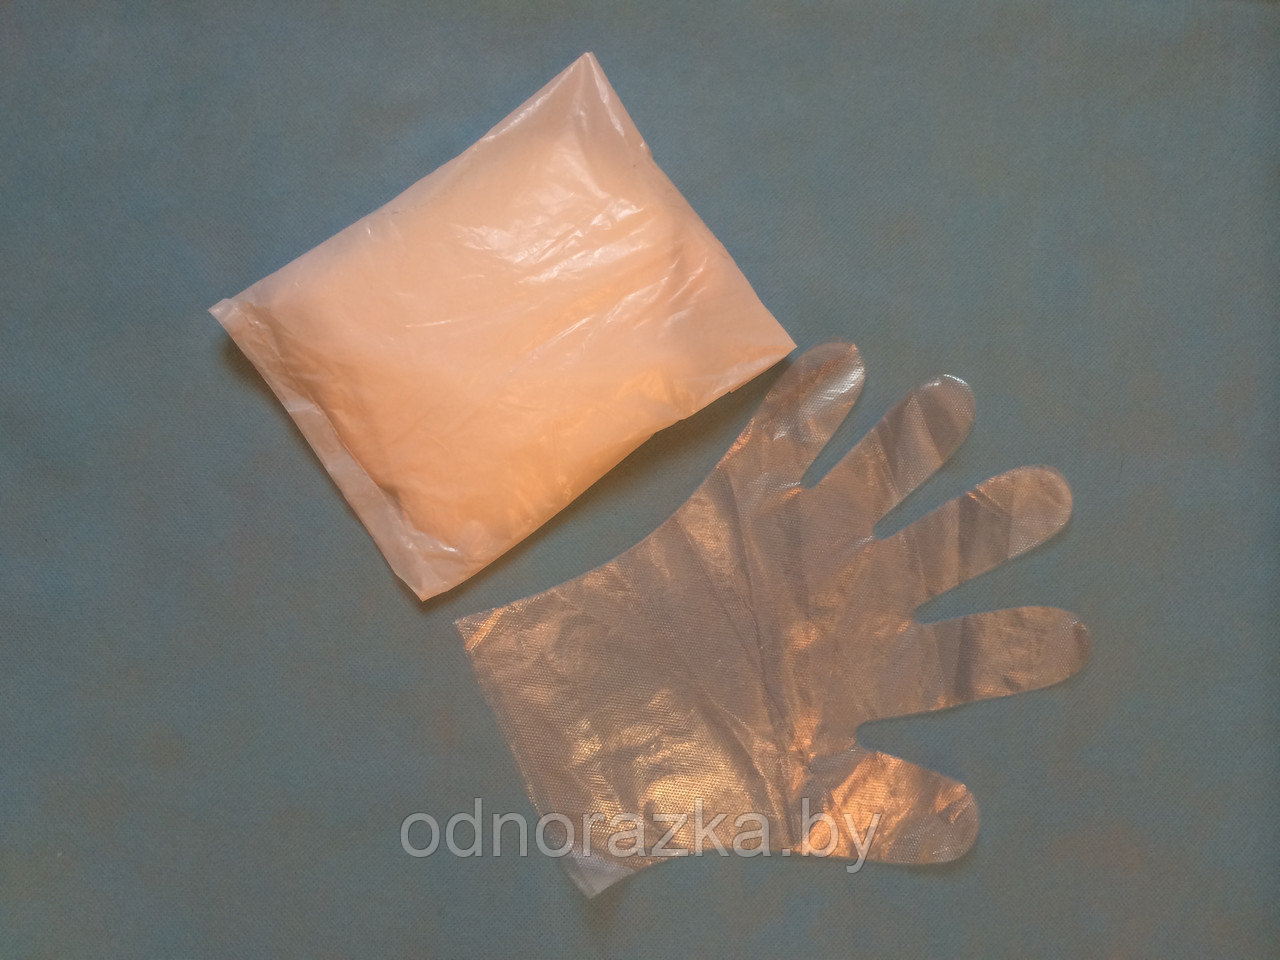 Перчатки одноразовые полиэтиленовые 100 шт